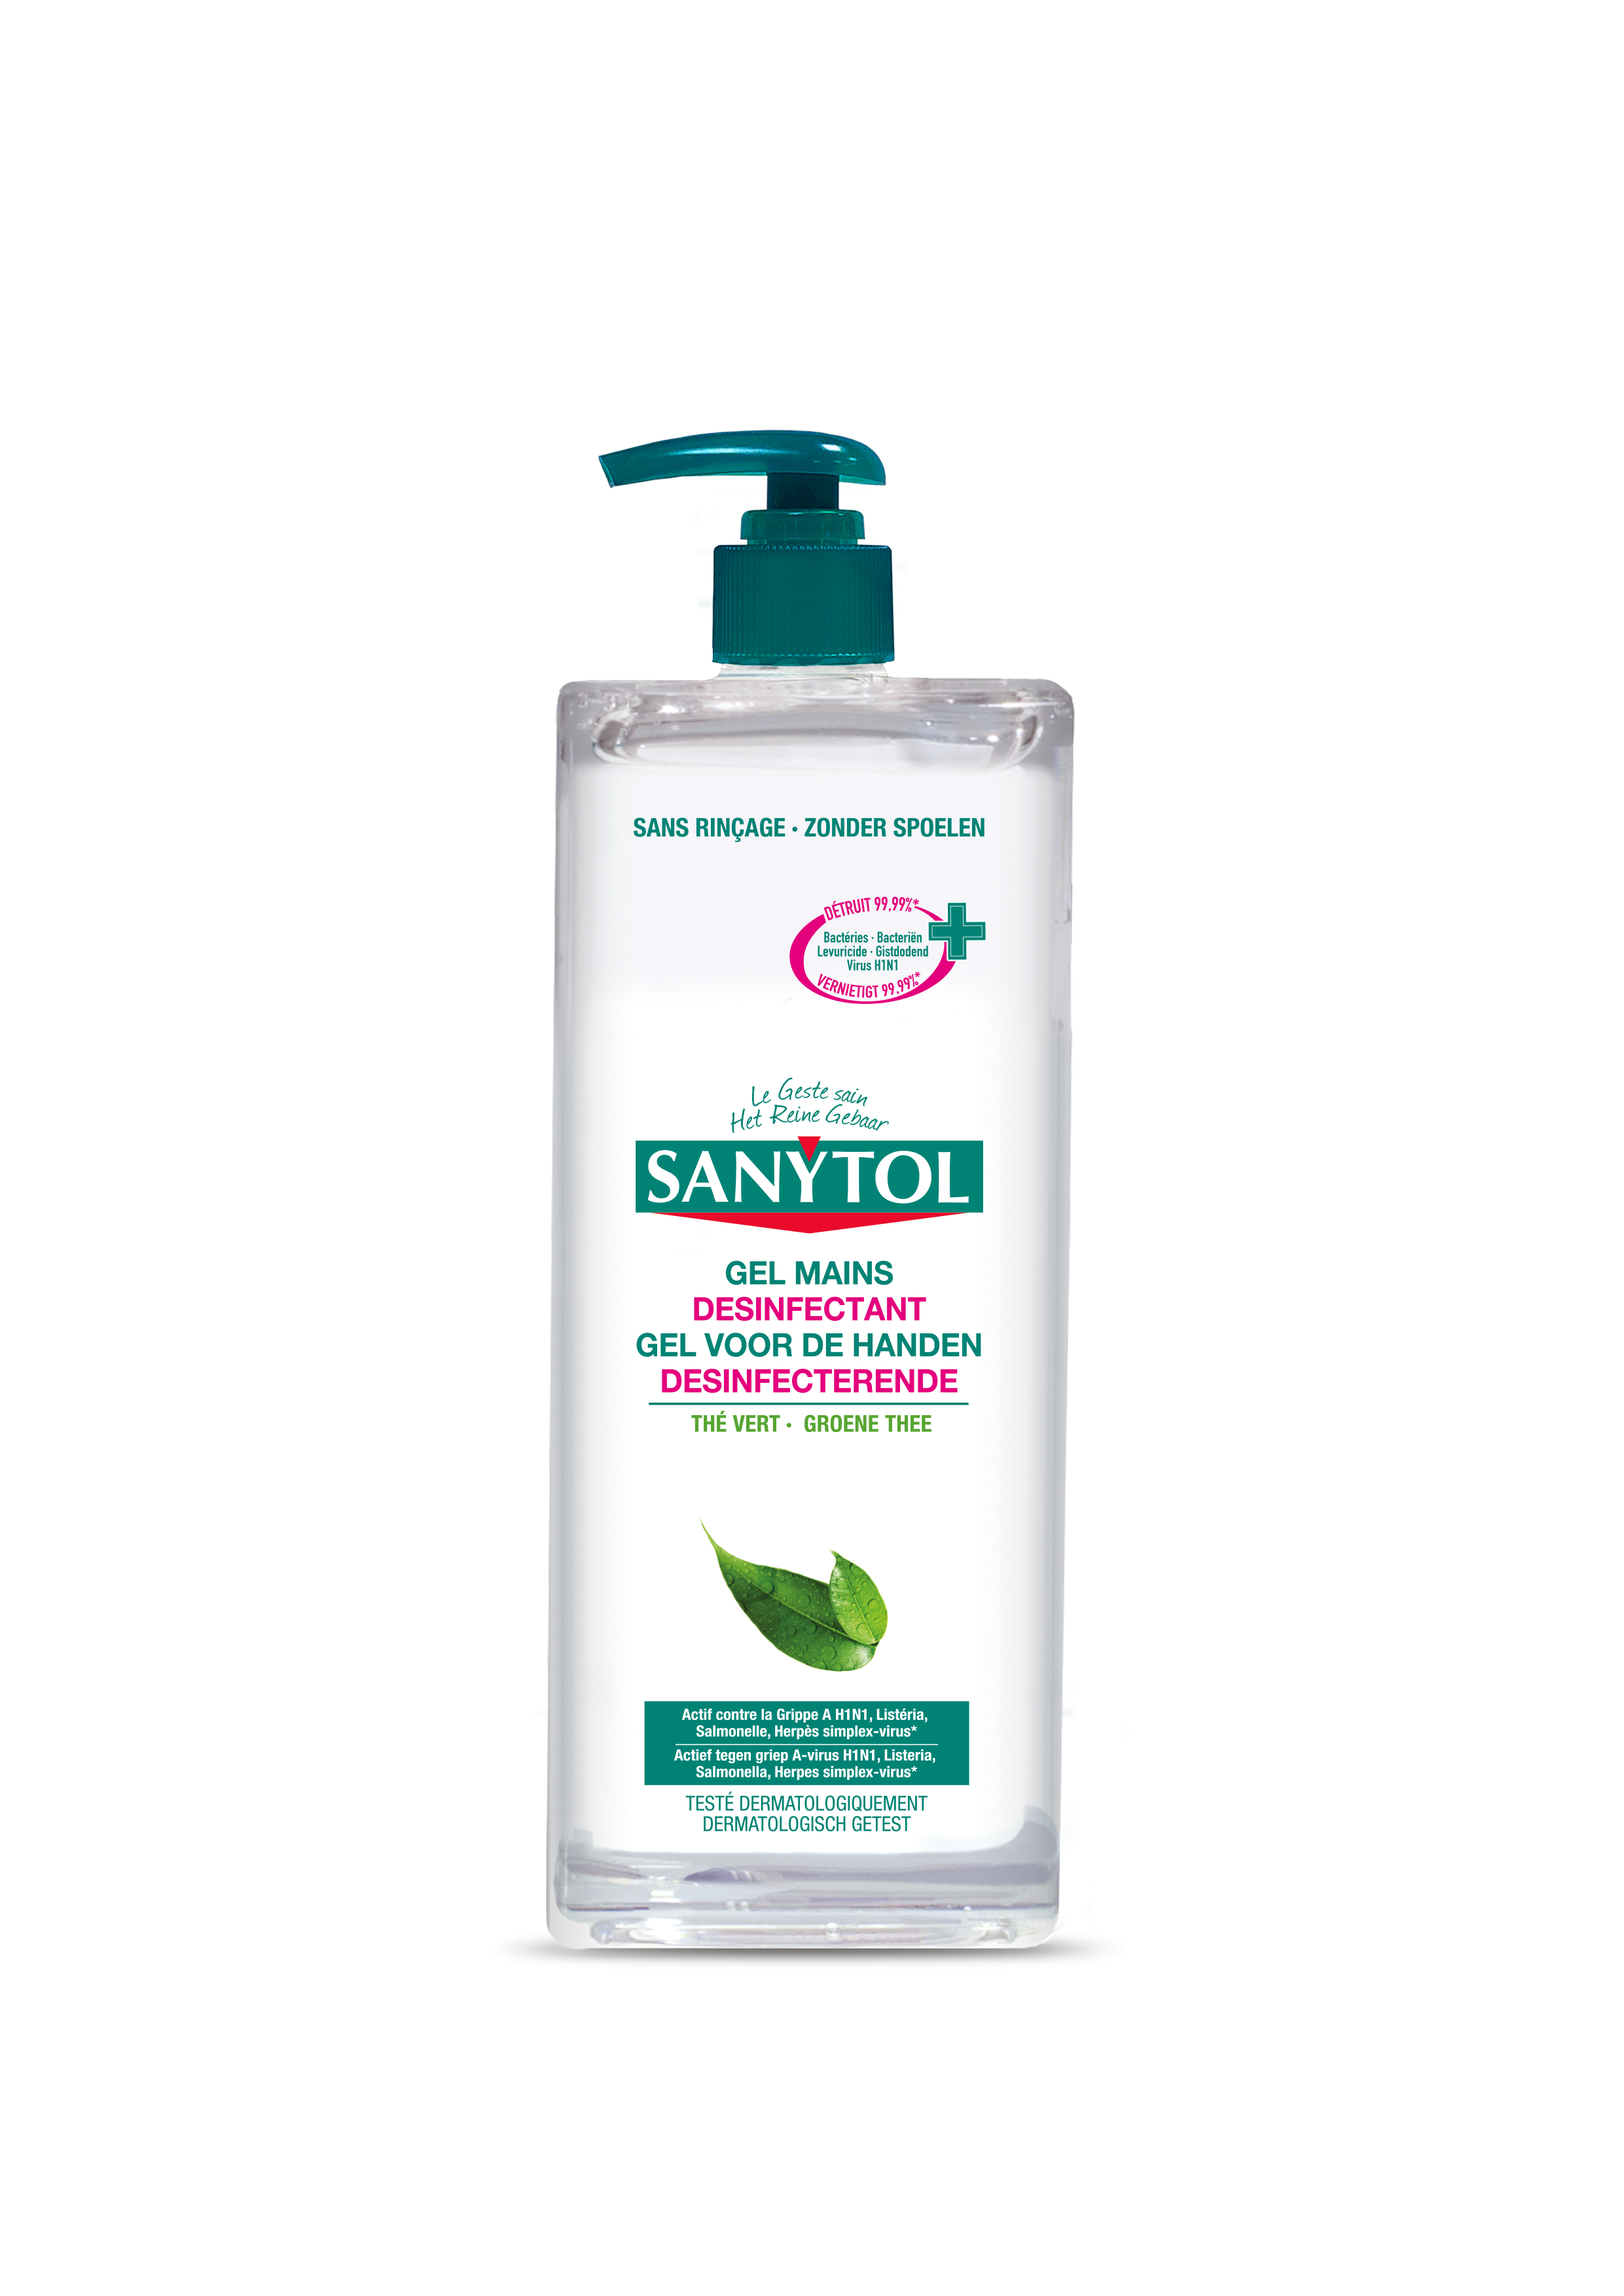 Sanytol désinfectant pour linge fleurs blanches 1L